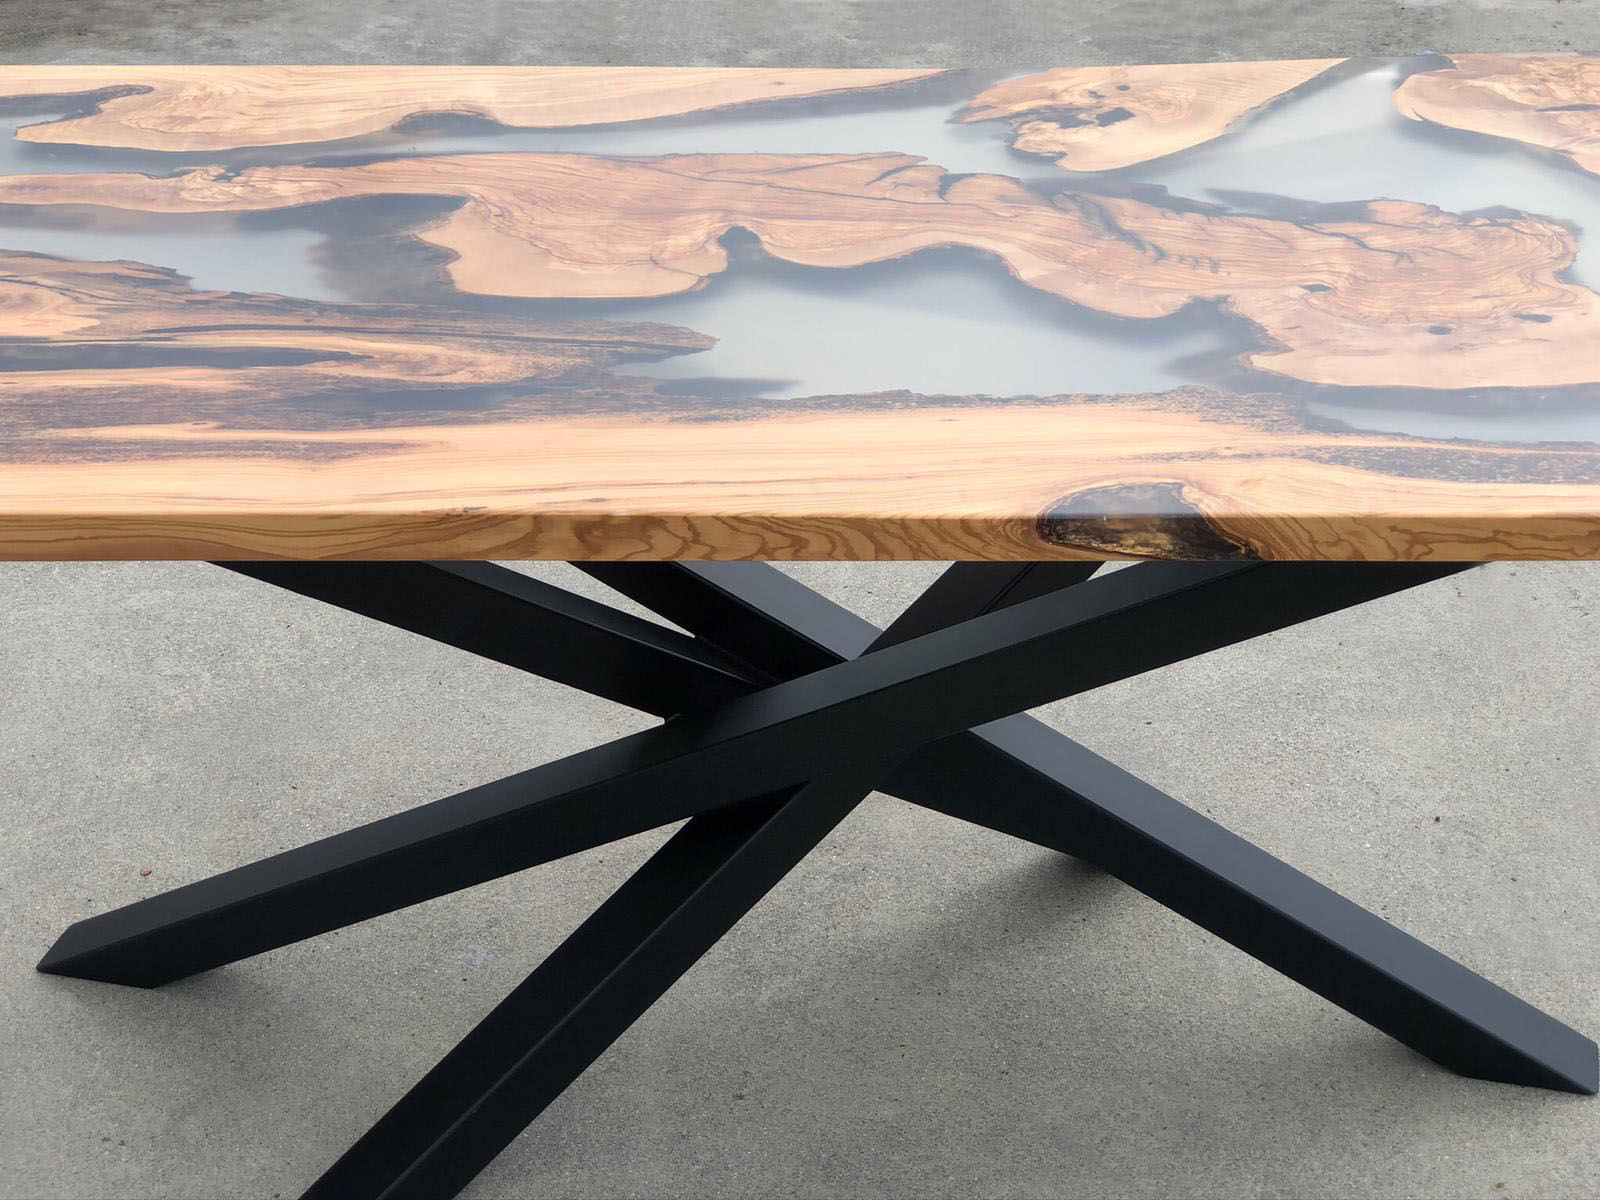 Luxtable tavoli in legno massello e resina epossidica su misura